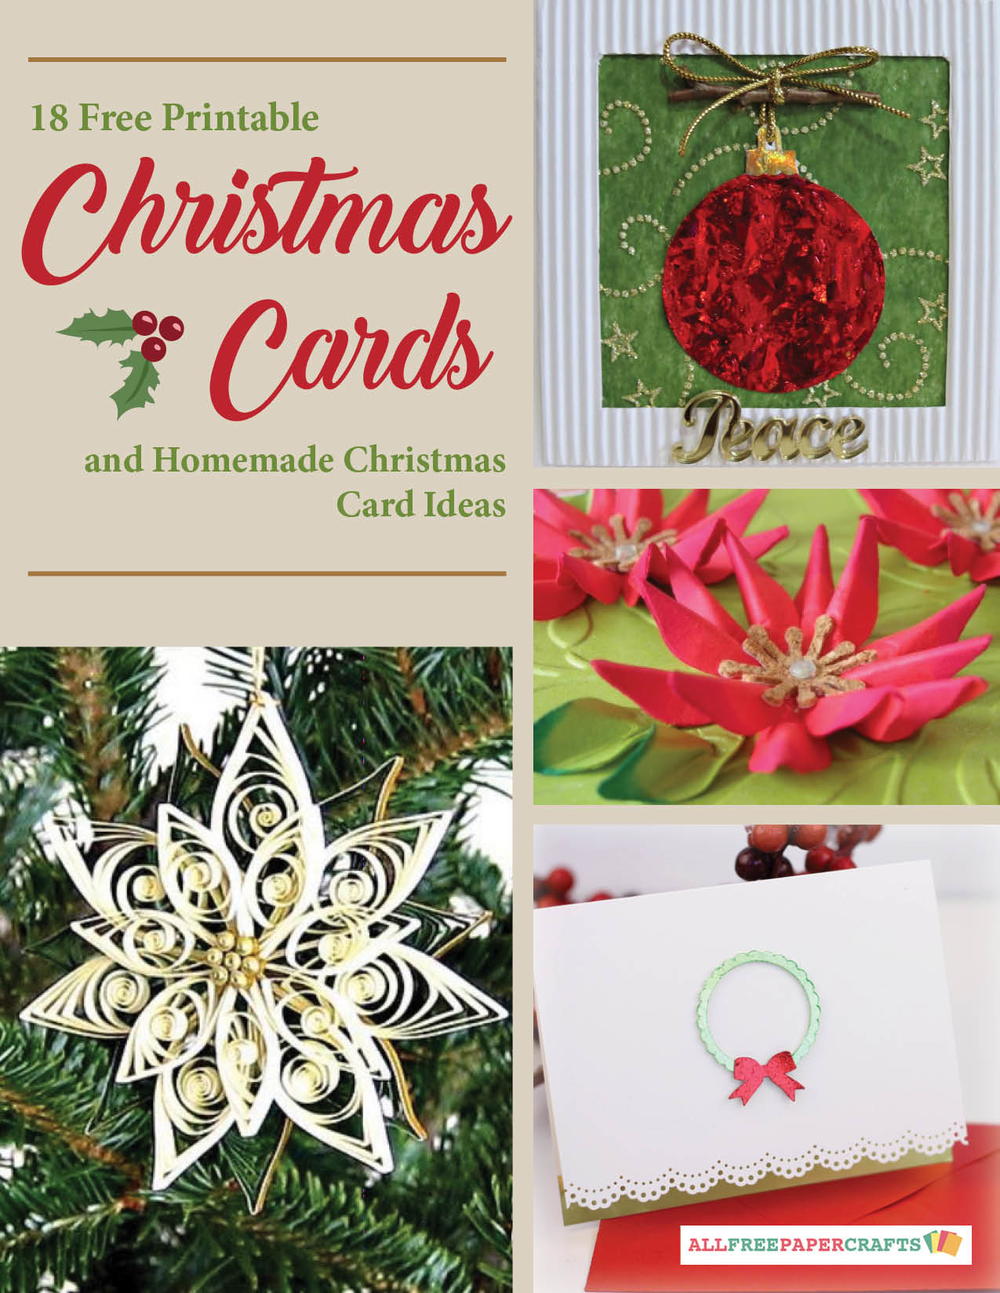 18-free-printable-christmas-cards-and-homemade-christmas-card-ideas